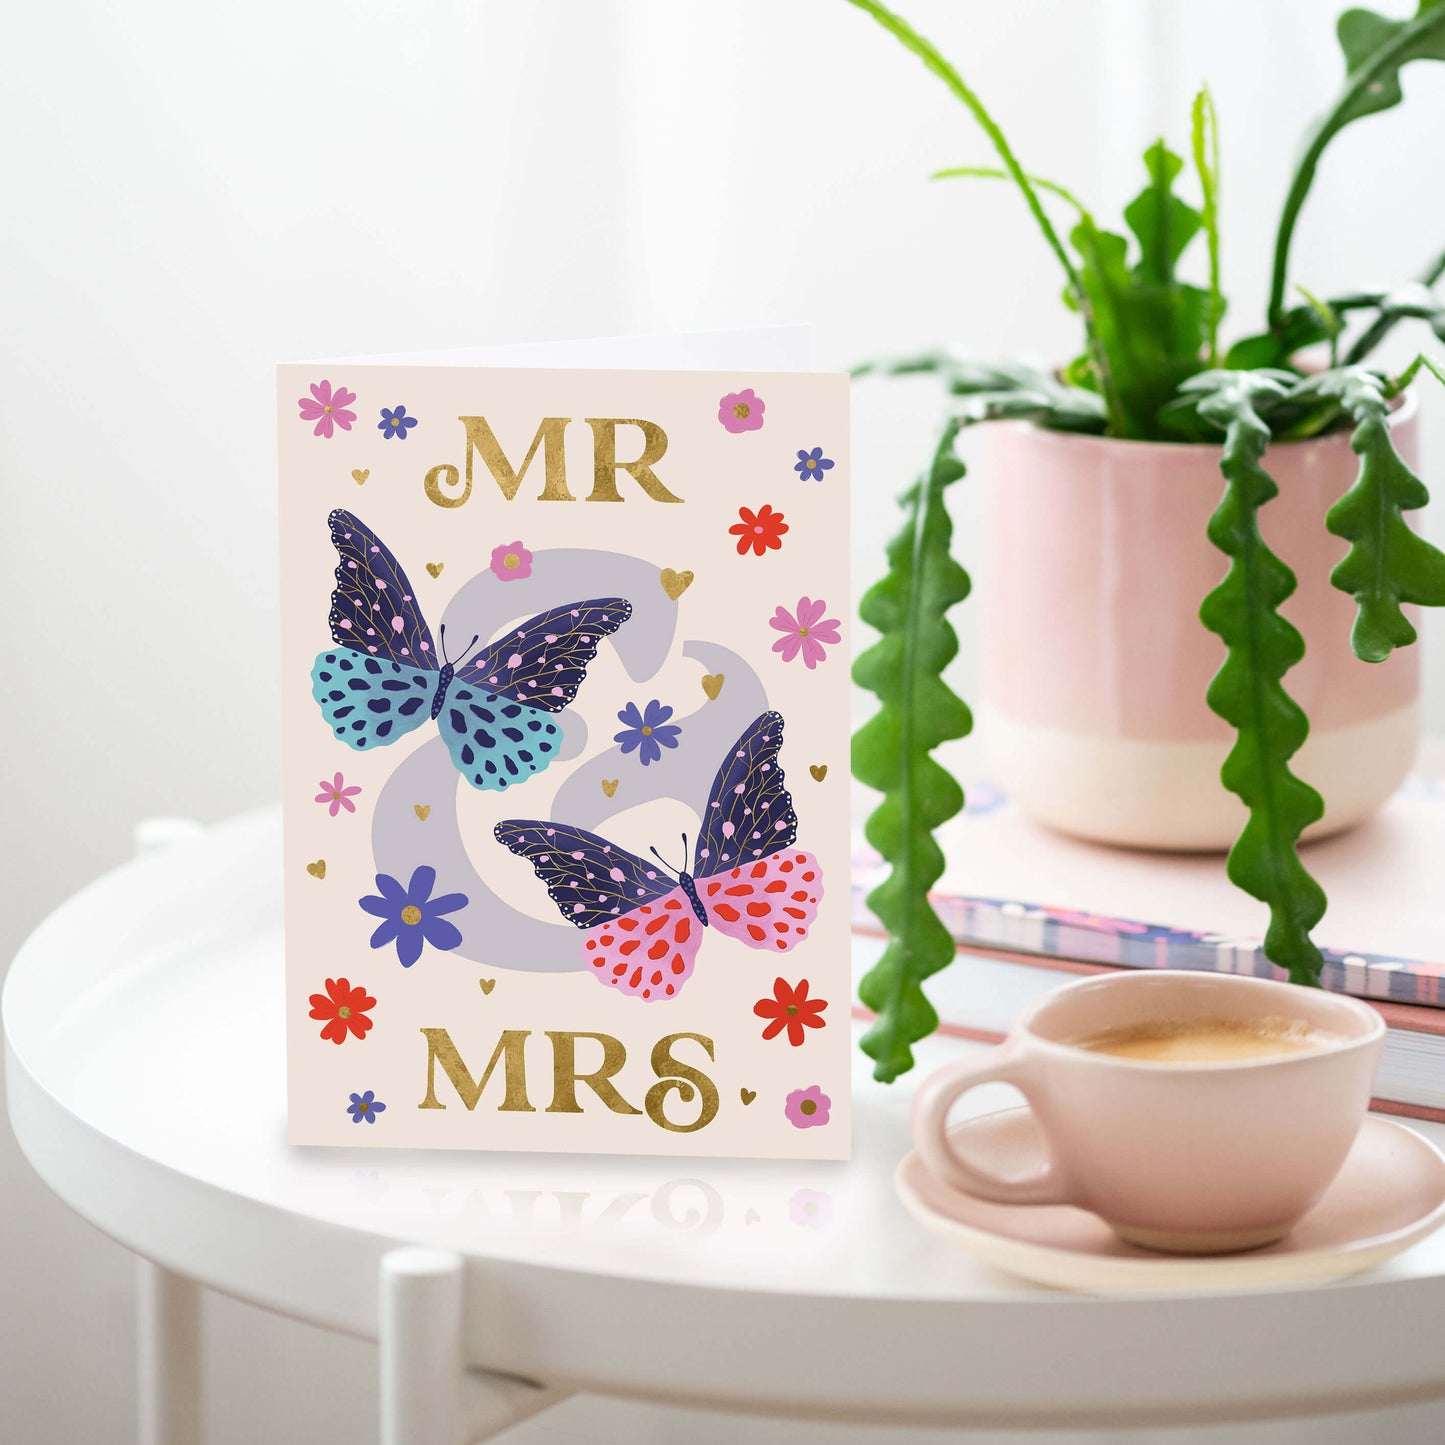 Mr & Mrs Wedding Card | Engagement Cards | Gold Foil Cards